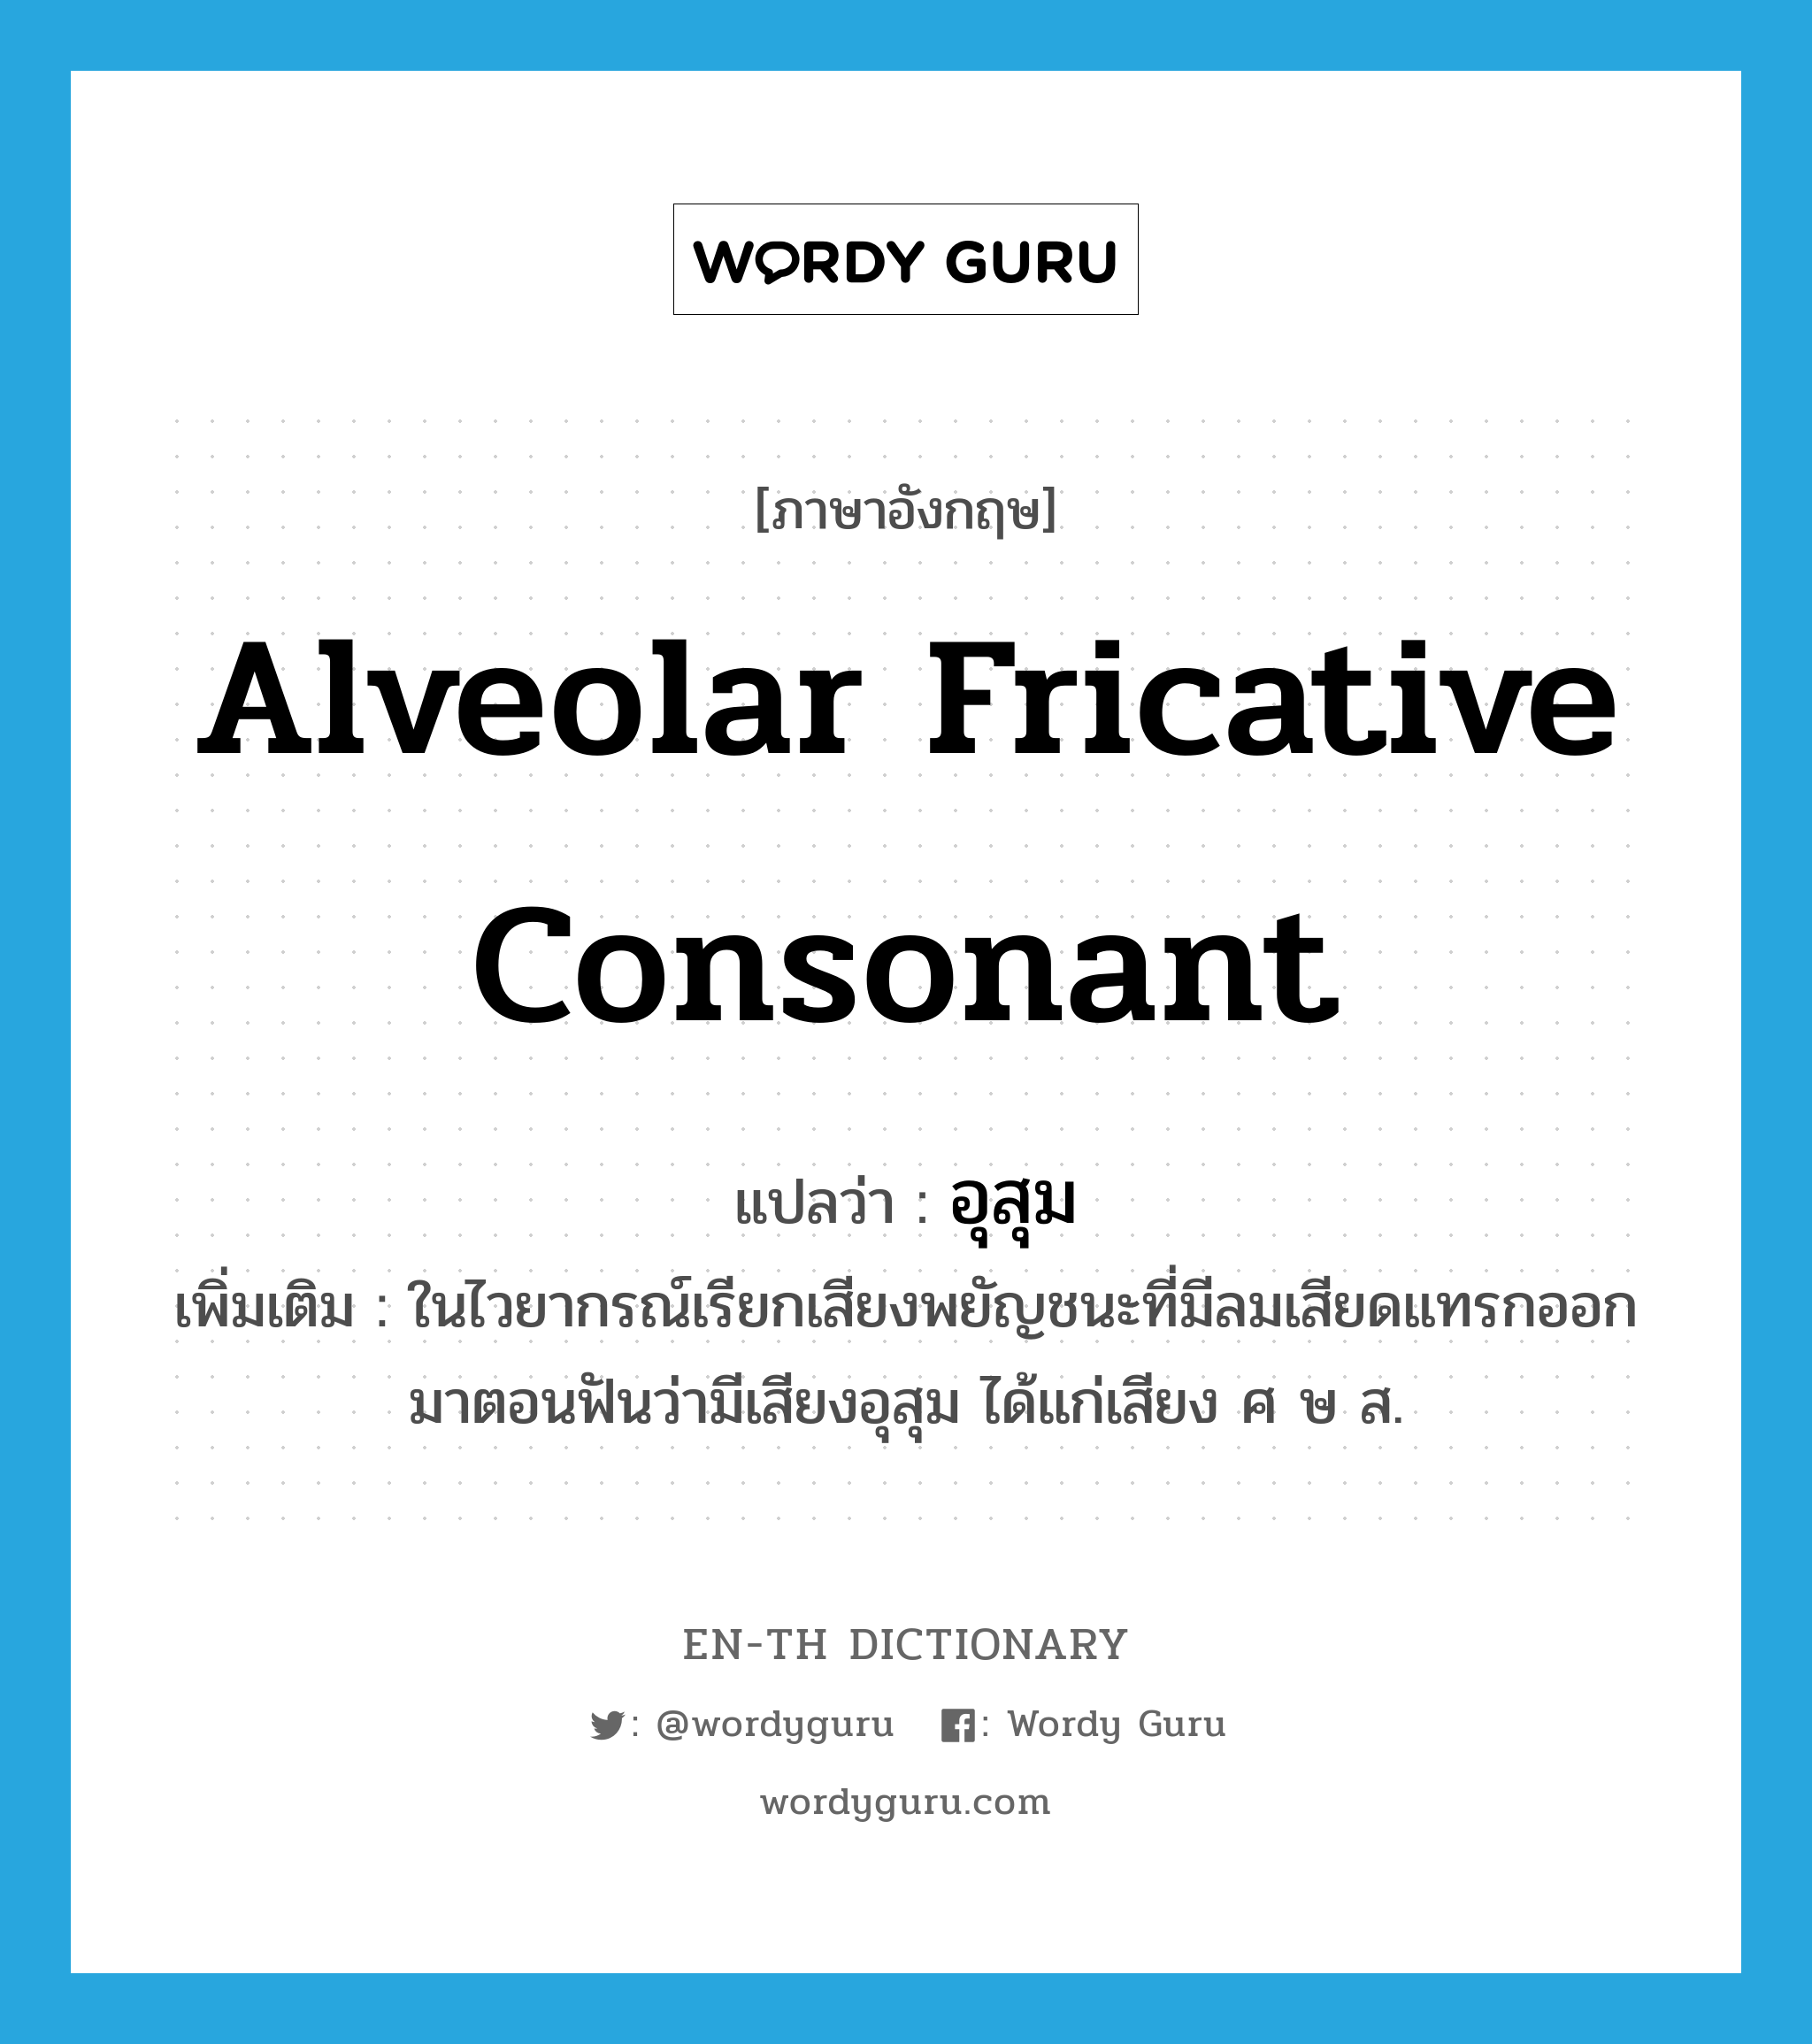 alveolar fricative consonant แปลว่า?, คำศัพท์ภาษาอังกฤษ alveolar fricative consonant แปลว่า อุสุม ประเภท N เพิ่มเติม ในไวยากรณ์เรียกเสียงพยัญชนะที่มีลมเสียดแทรกออกมาตอนฟันว่ามีเสียงอุสุม ได้แก่เสียง ศ ษ ส. หมวด N